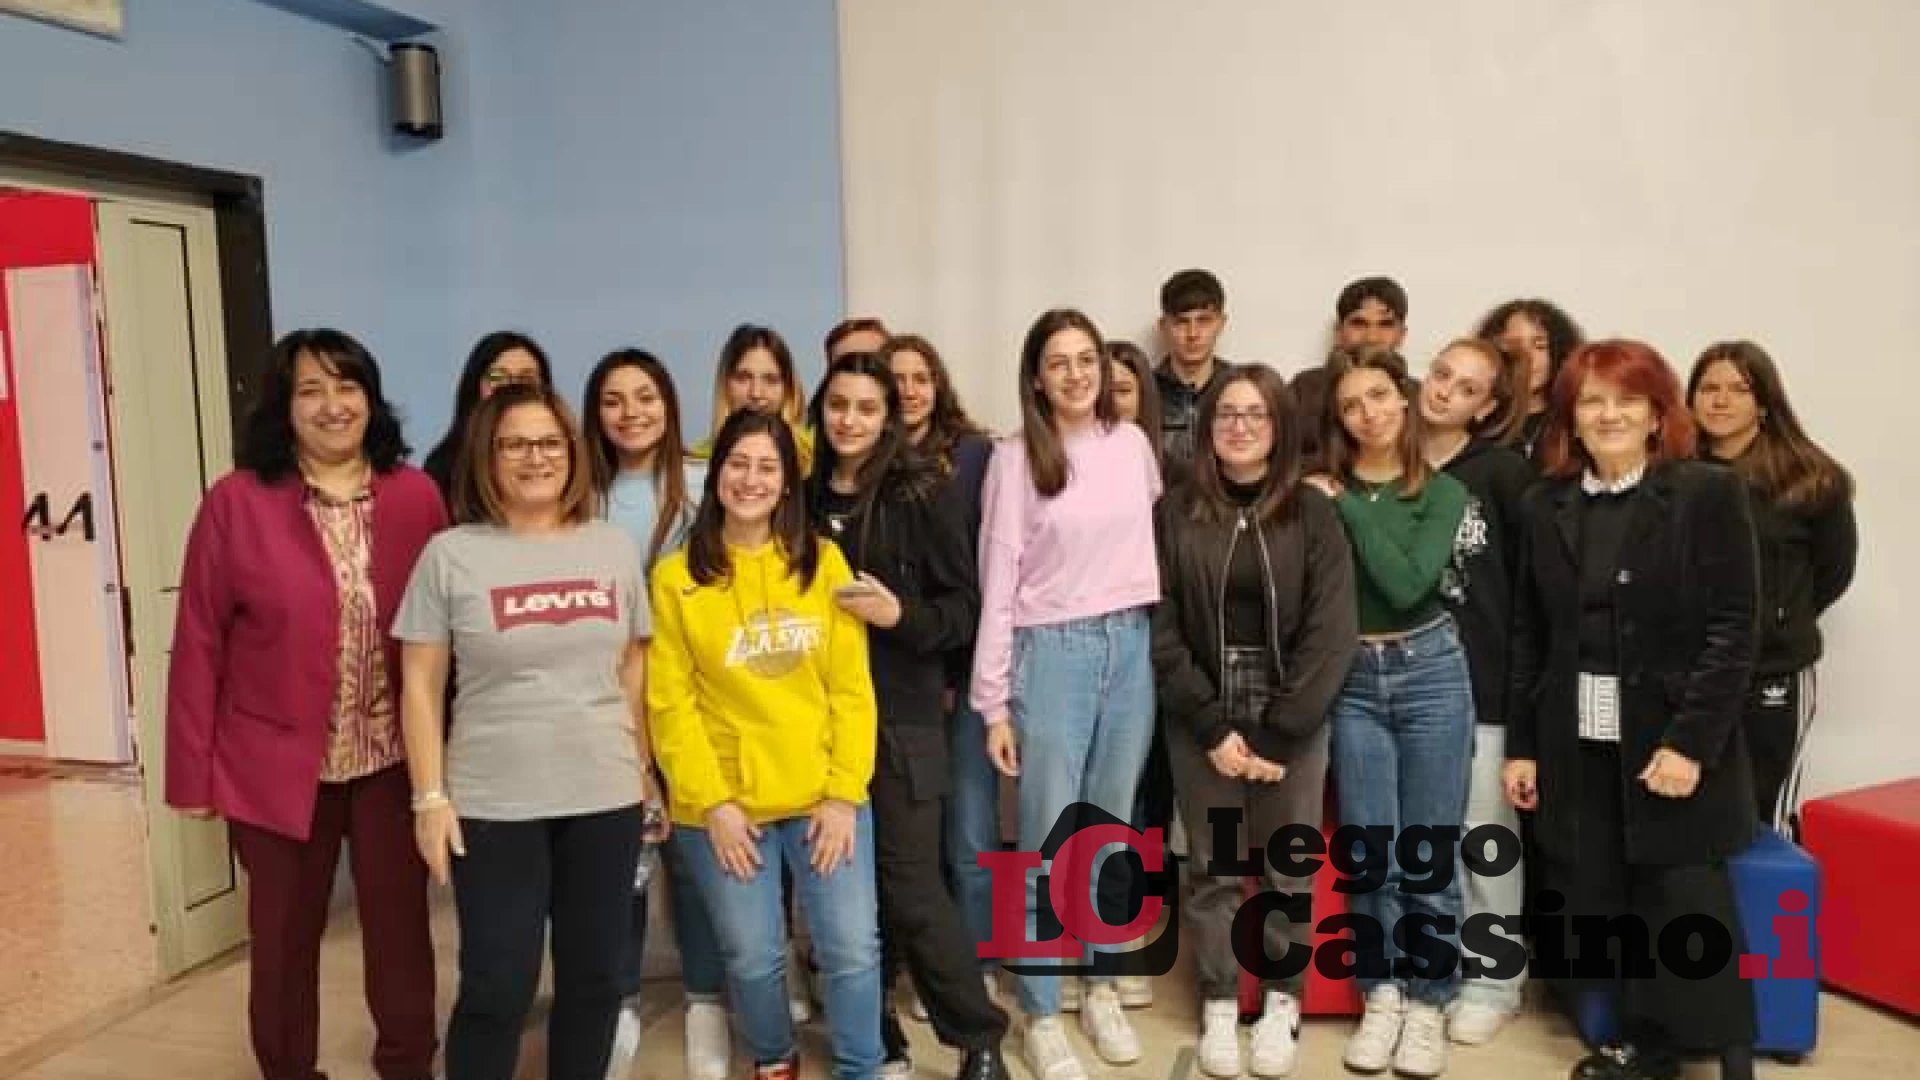 Anna Ciaraldi intervistata dagli studenti della redazione "Majorana" dell'Itis